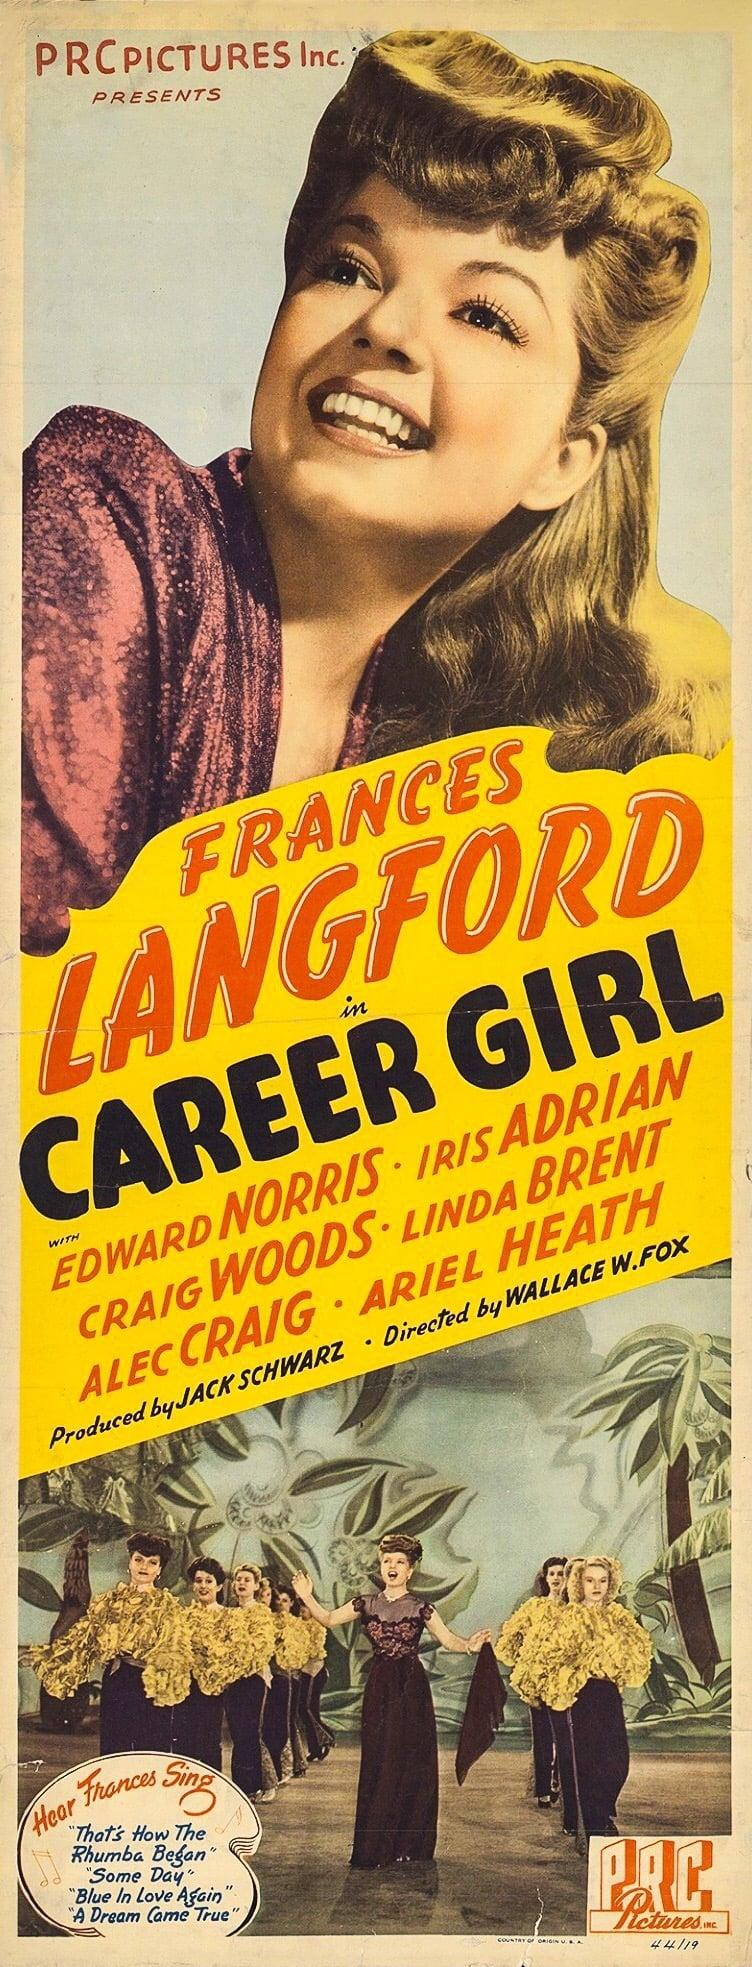 Career Girl poster